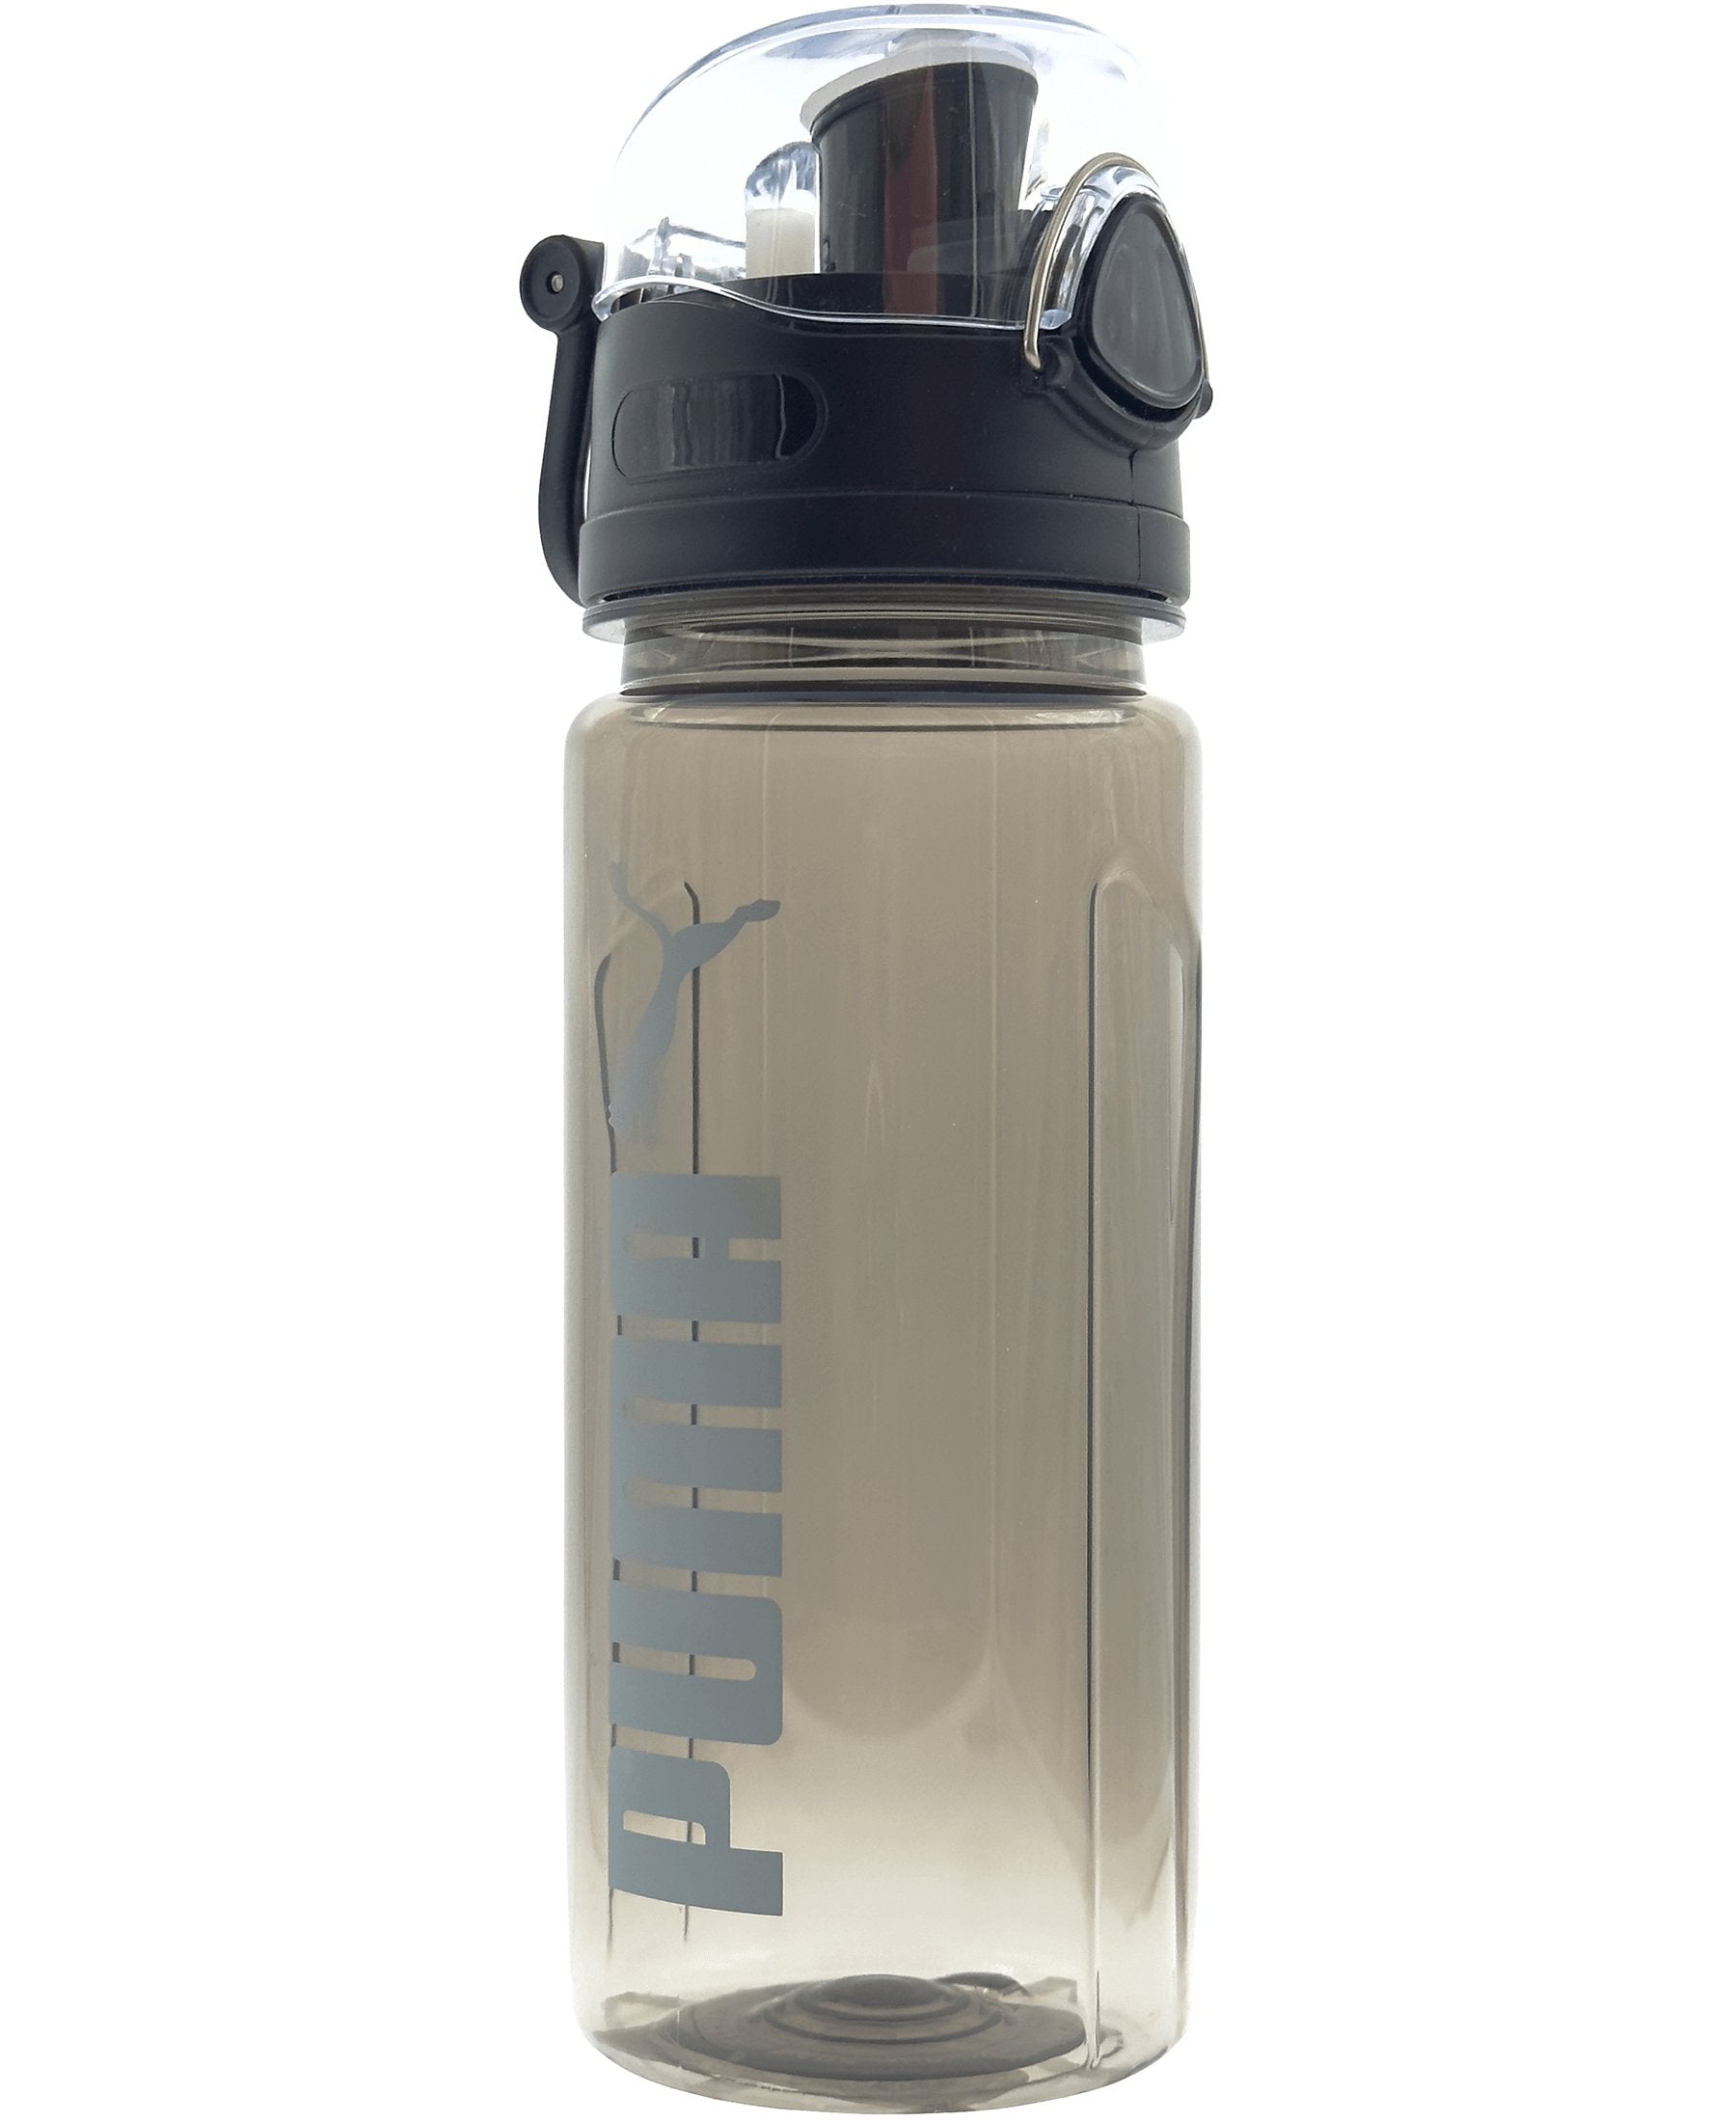 Puma bietet eine klassische Trinkflasche mit Schraubverschluss an, die im Onlineshop SHOP4TEAMSPORT erhältlich ist. Die Flasche verfügt über ein auslaufsicheres Design und einen durchsichtigen Klappdeckel mit einem Sicherheitsverschluss aus Metall. Mit ihrer großen Trinköffnung und dem durchsichtigen Flaschenkörper ist sie praktisch und benutzerfreundlich. Die Flasche ist zudem mit einem kleinen Tragegriff aus Plastik ausgestattet. Der verwendete Kunststoff ist BPA-frei und frei von Schadstoffen.